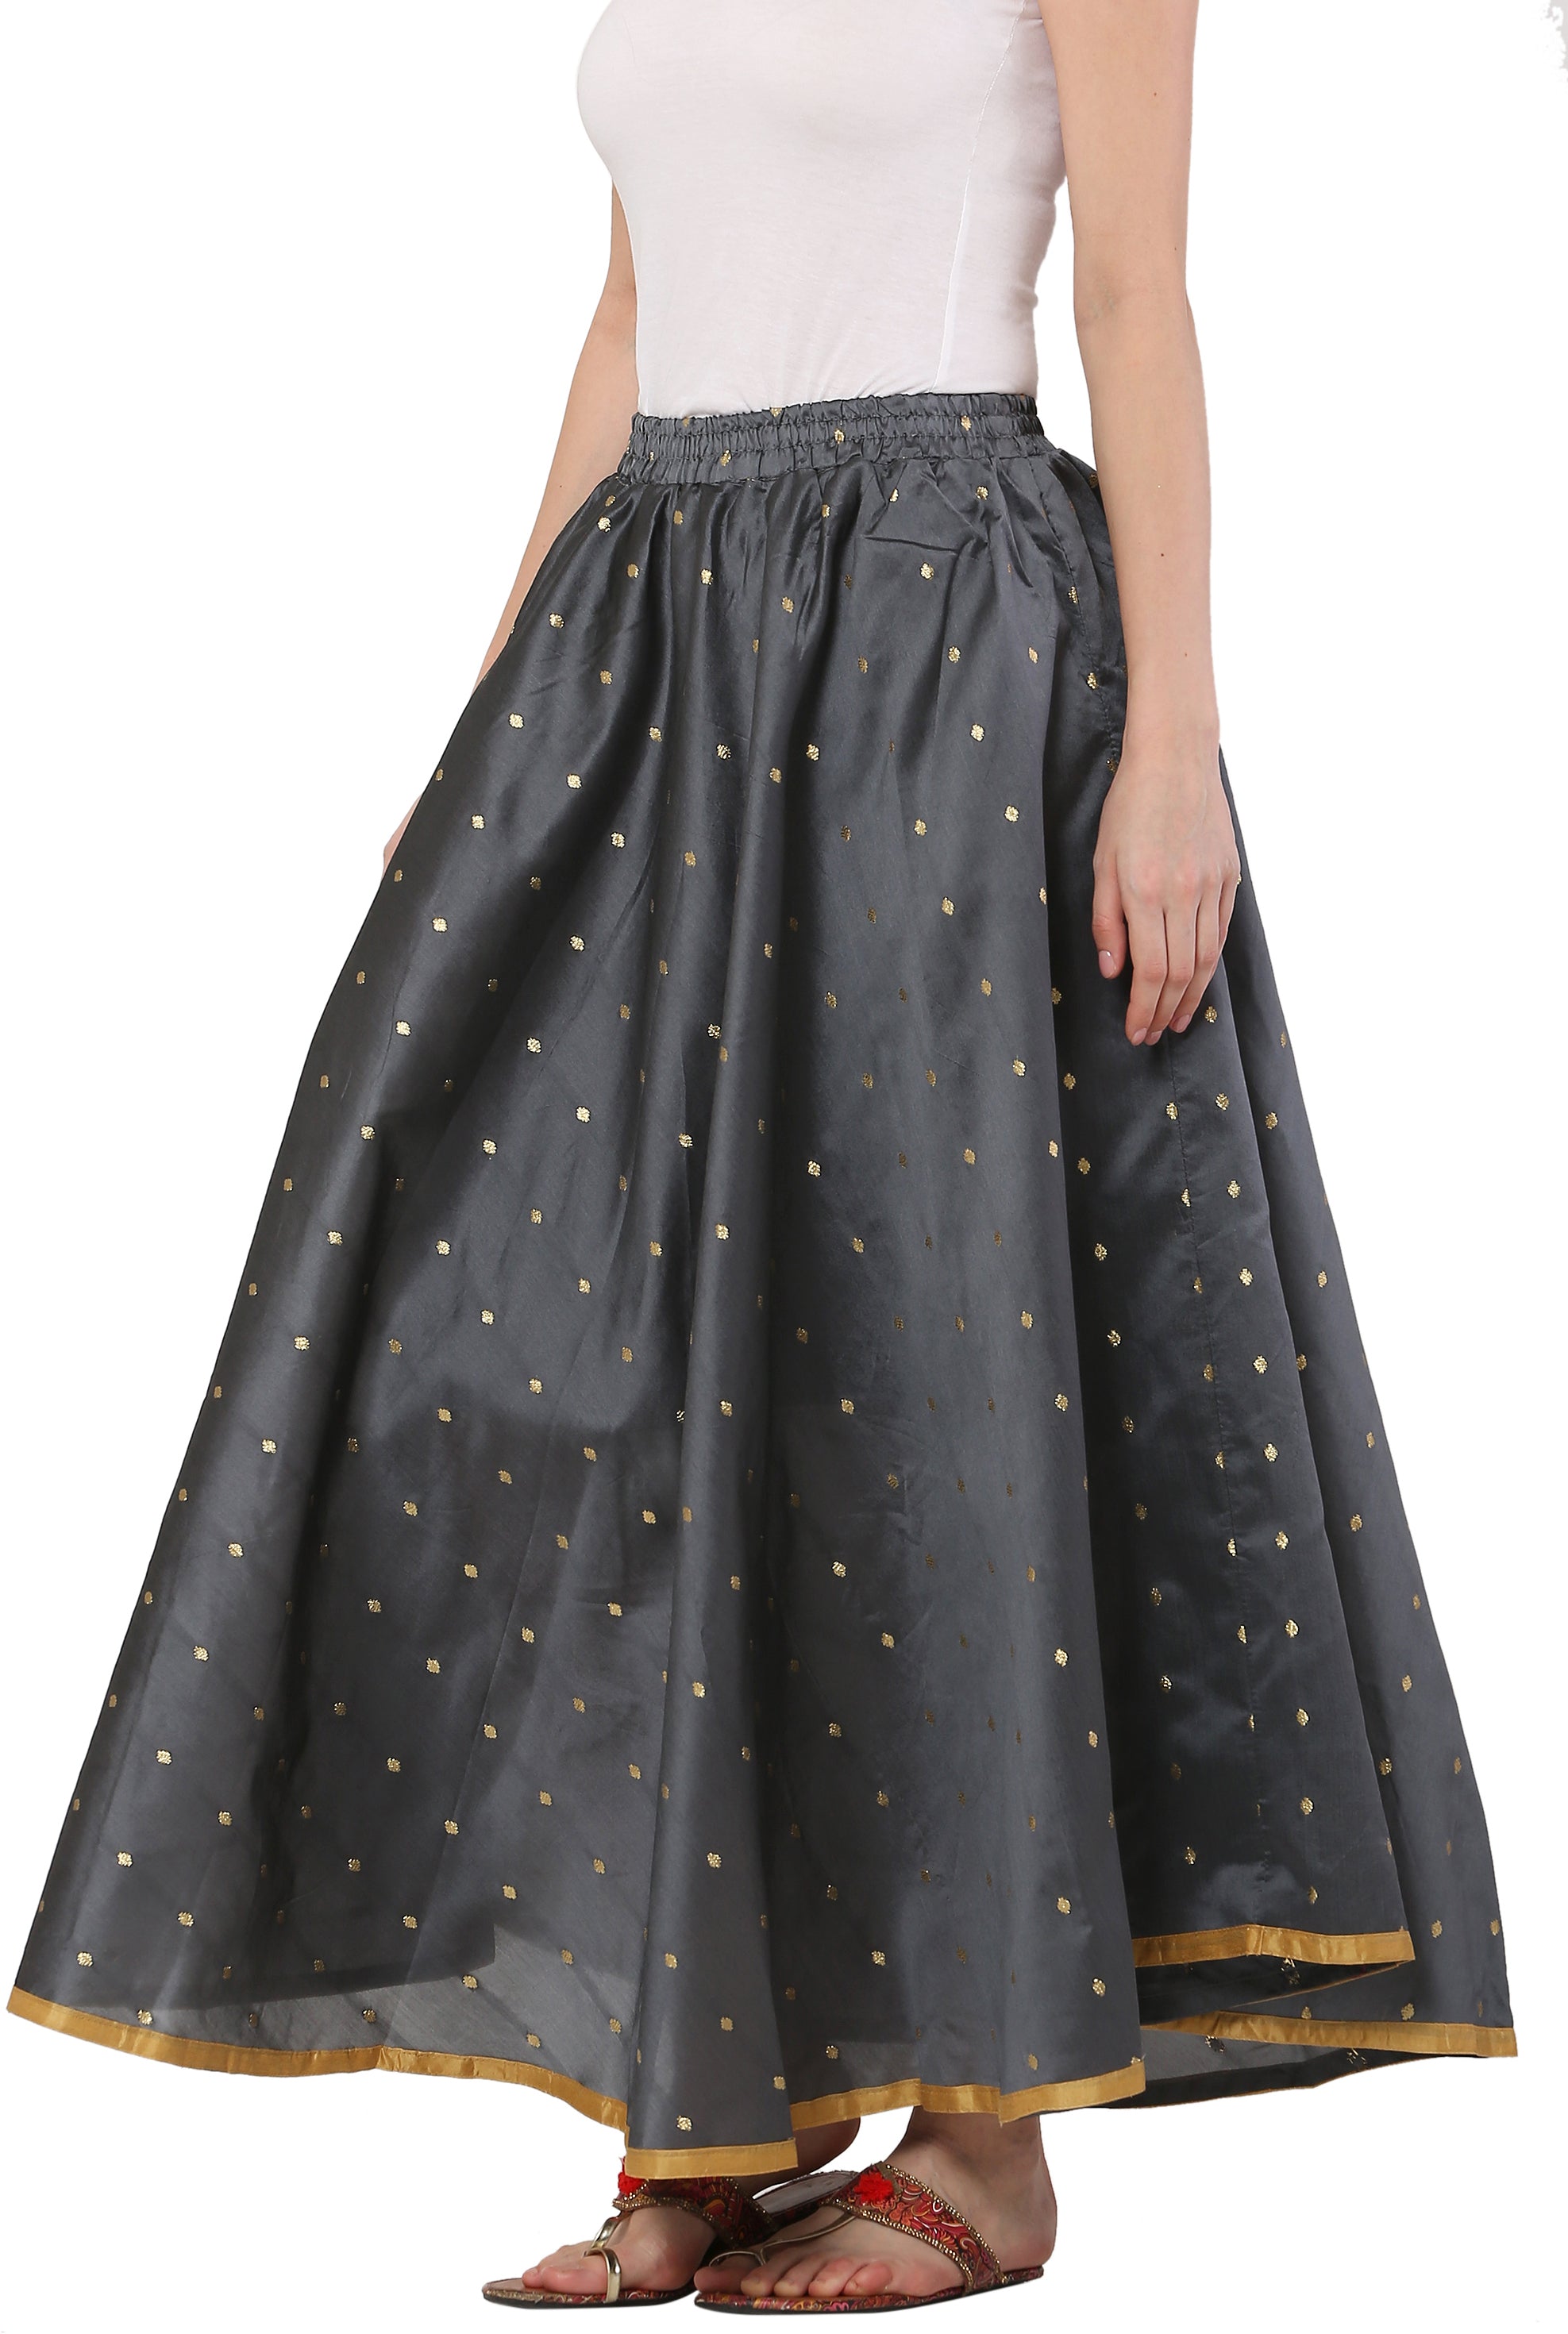 Skirt Fabrics Online, Best Skirt Materials